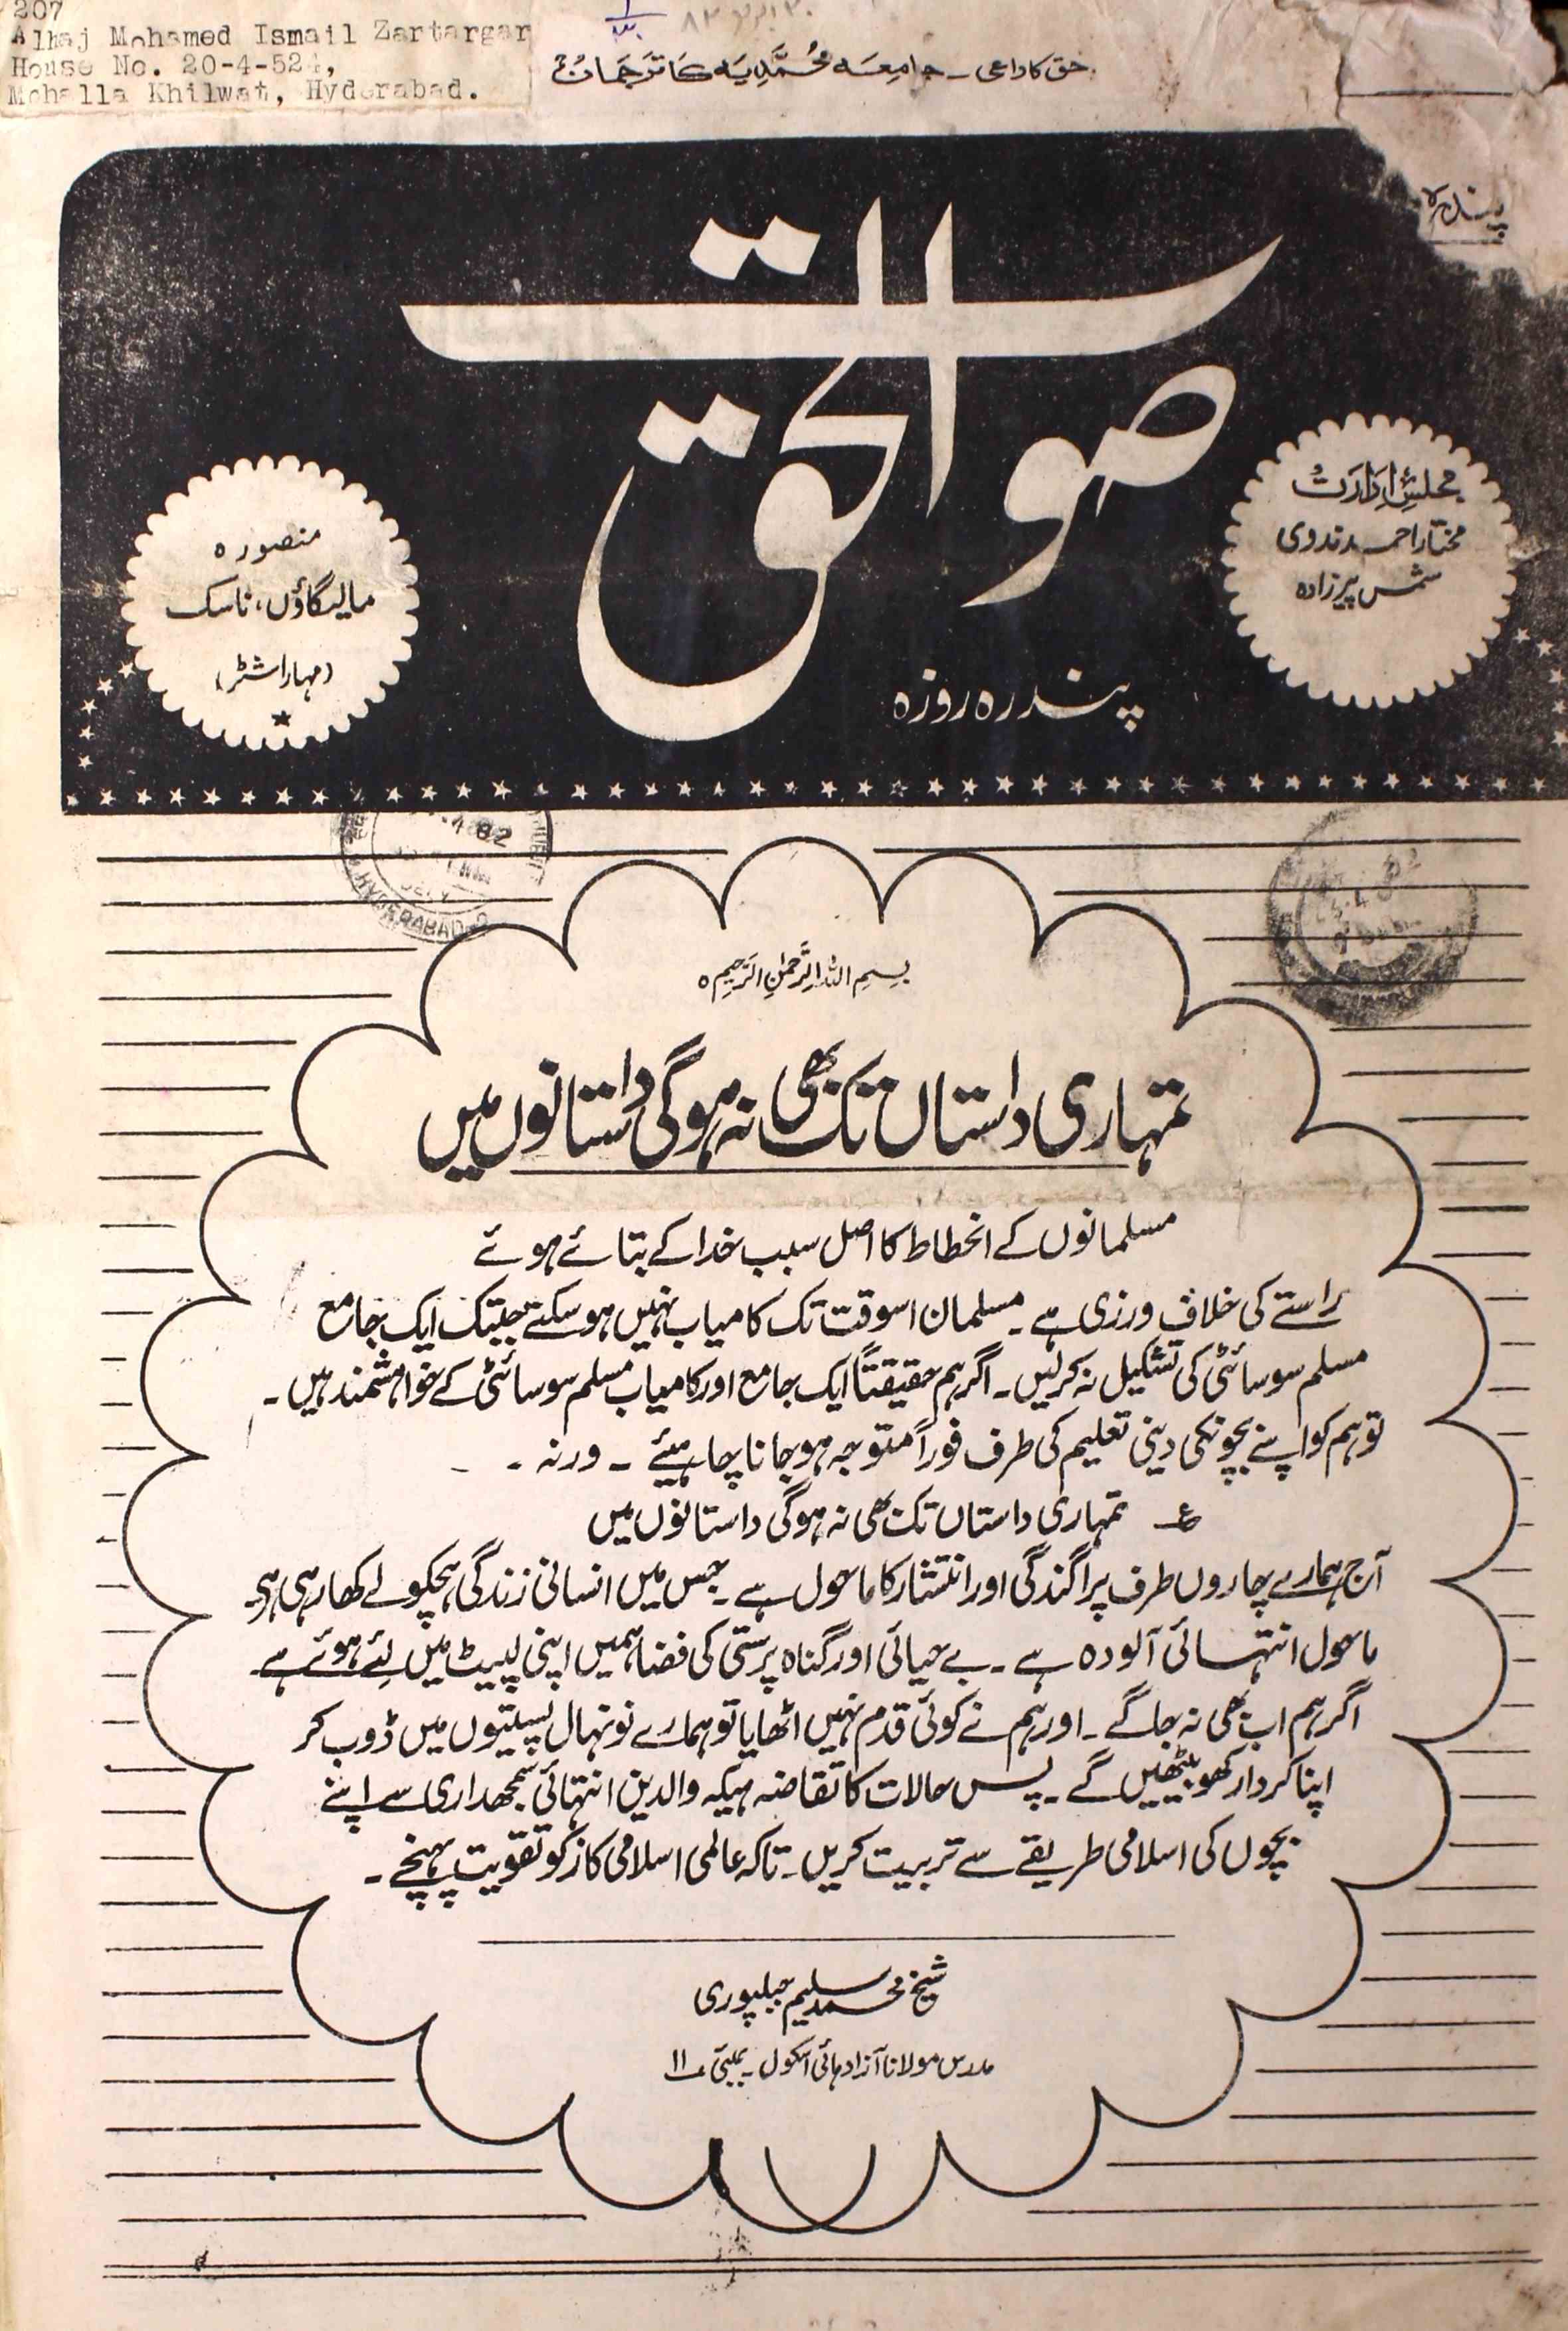 Sawt Al Haq Jild 1 Shumara 30 April 1982-Svk